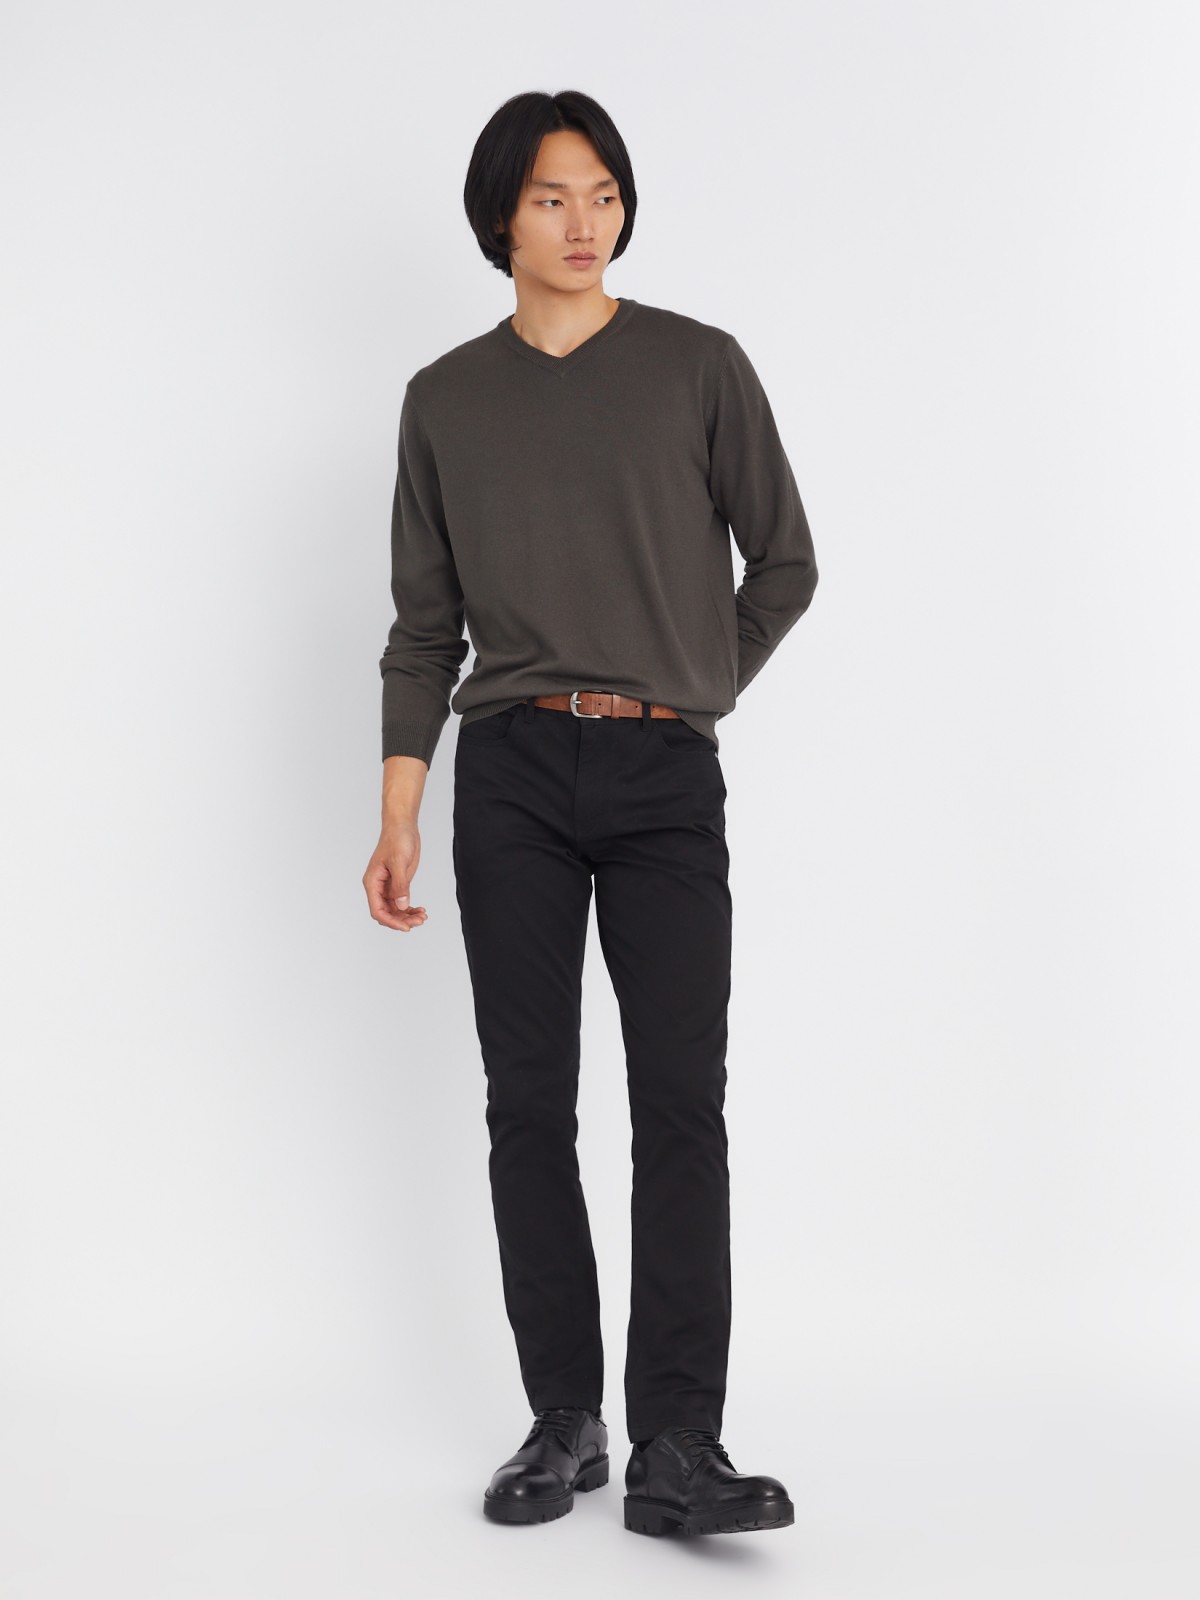 Шерстяной трикотажный пуловер с треугольным вырезом и длинным рукавом zolla 013346163042, цвет темно-серый, размер M - фото 2